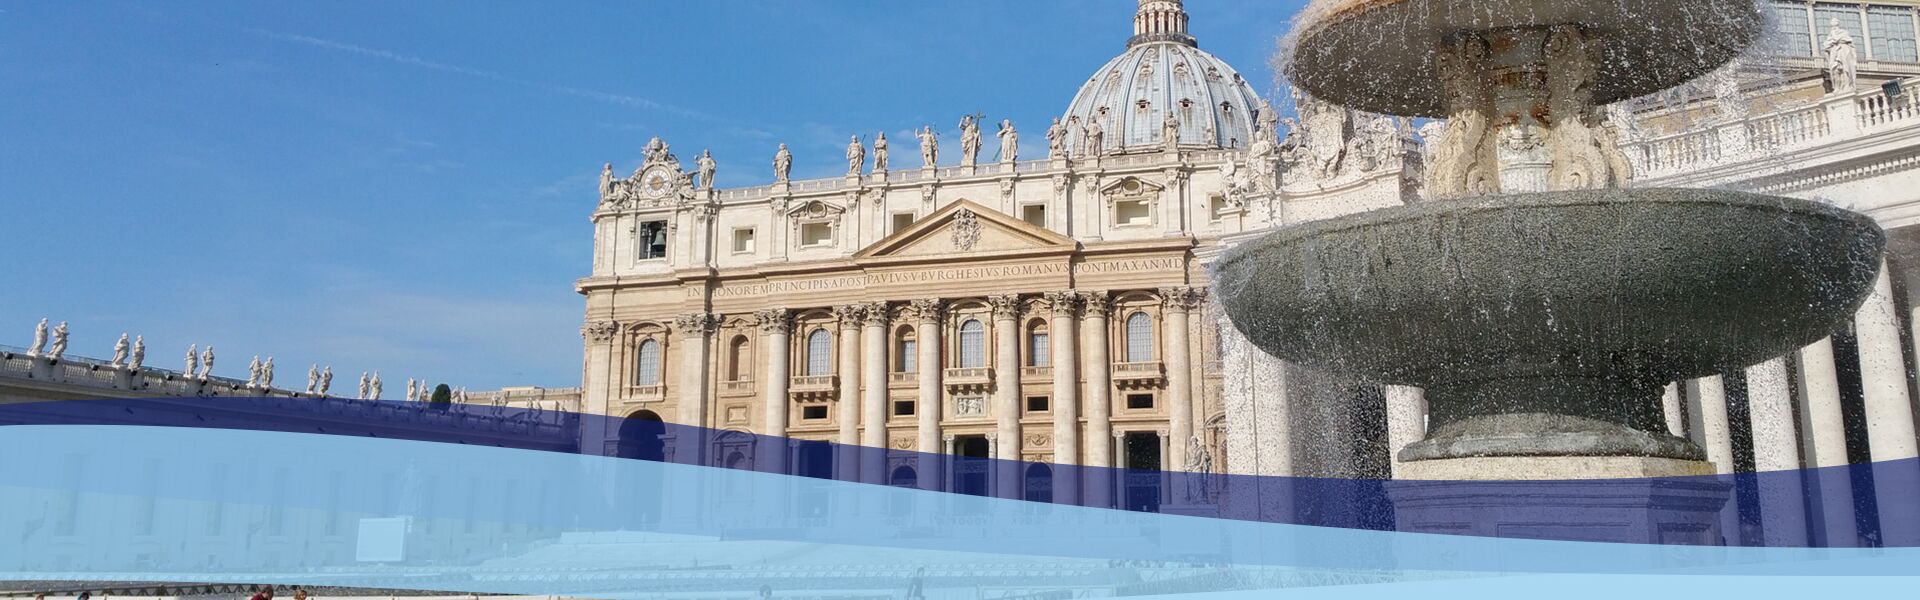 Klassenfahrten und Stundienreisen nach Rom, Vatikan